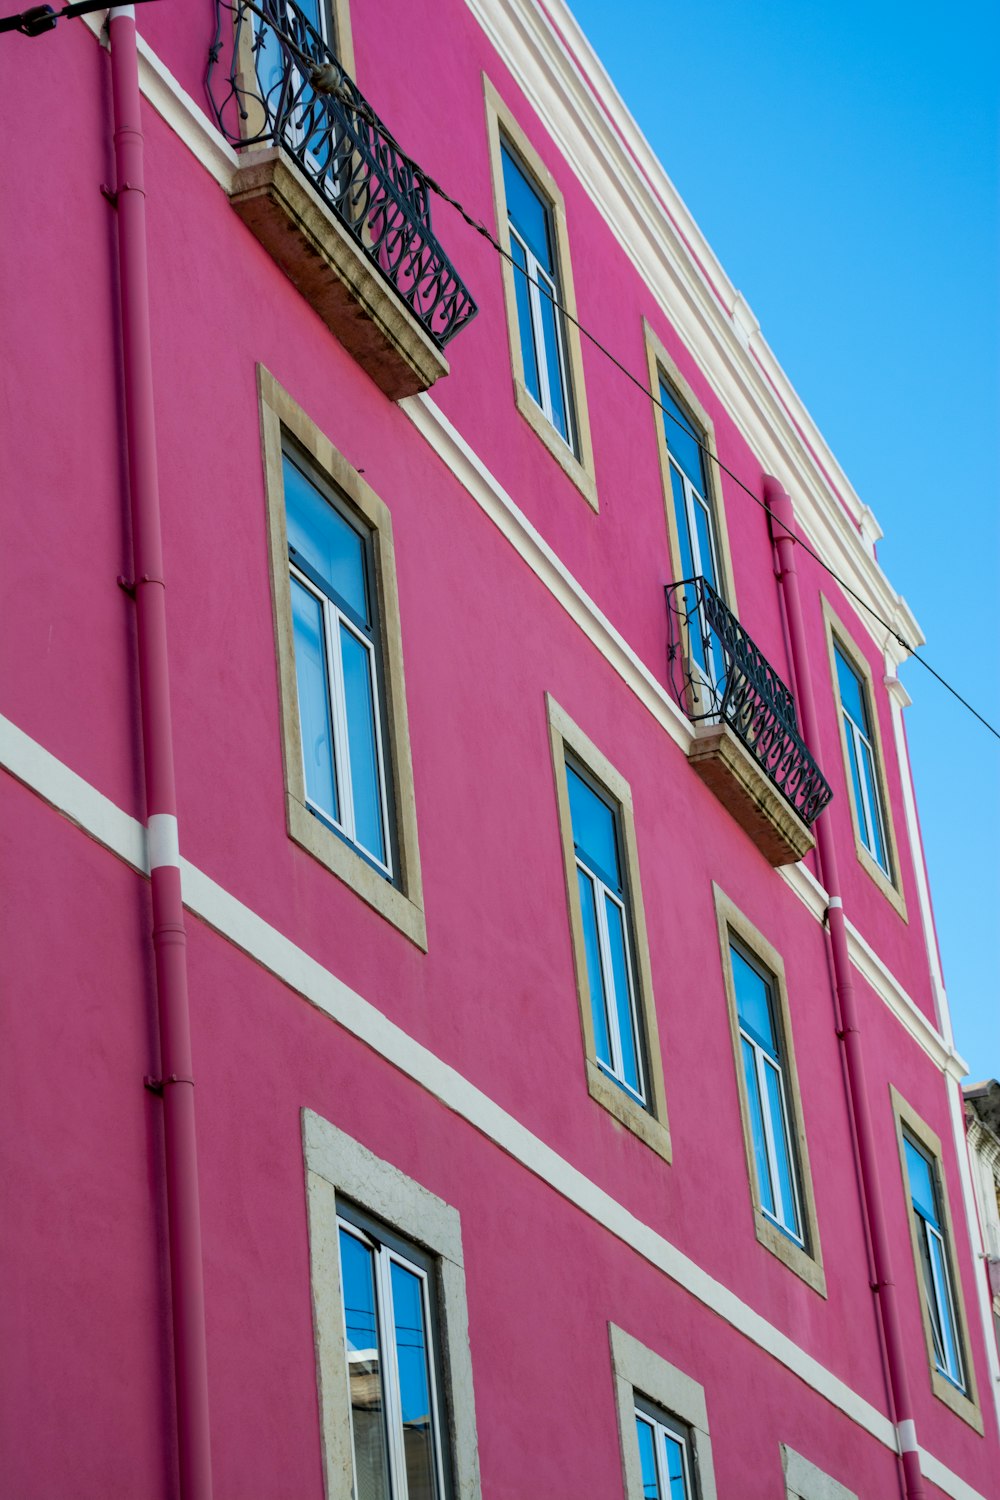 발코니와 발코니에 발코니가있는 분홍색 건물